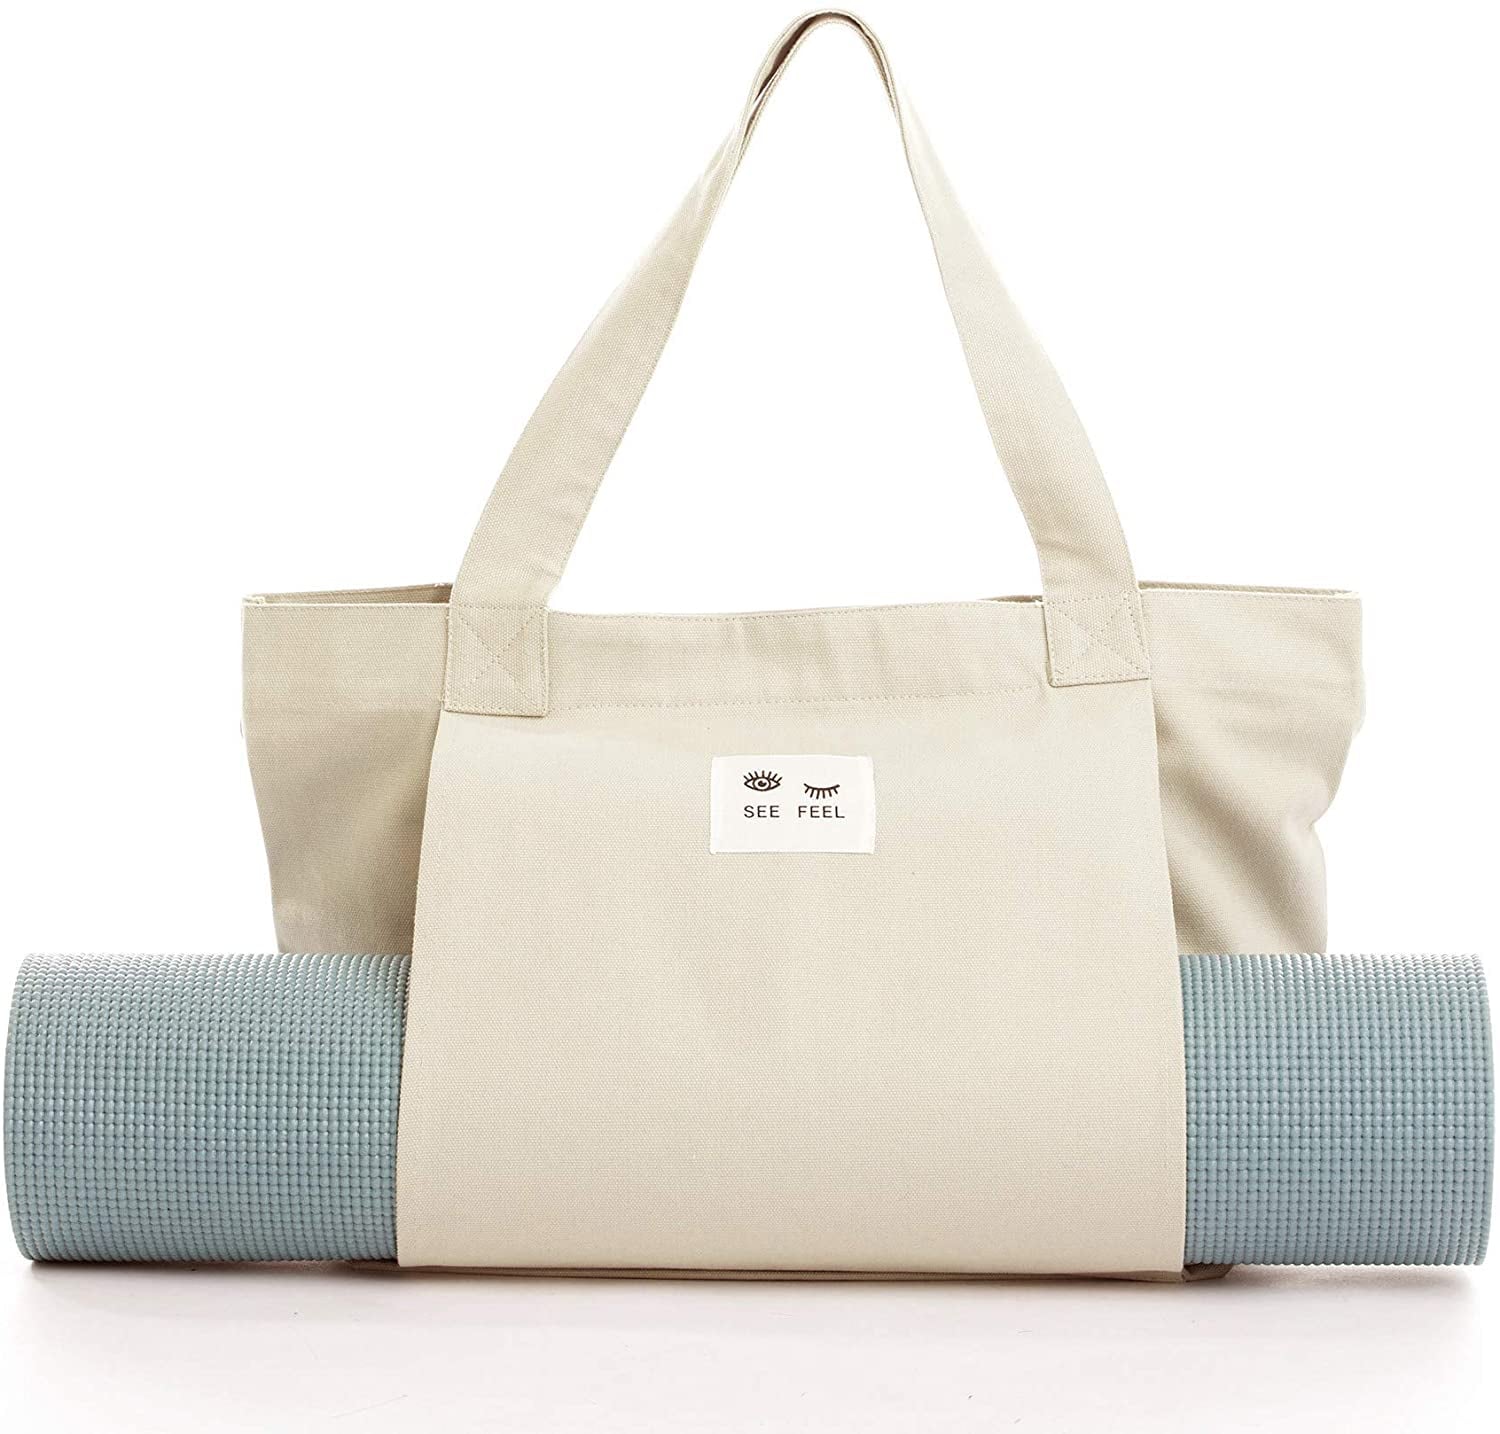 Yoga Bags  Best Yoga Mat Bags & Carriers UK –Yoga Studio Store